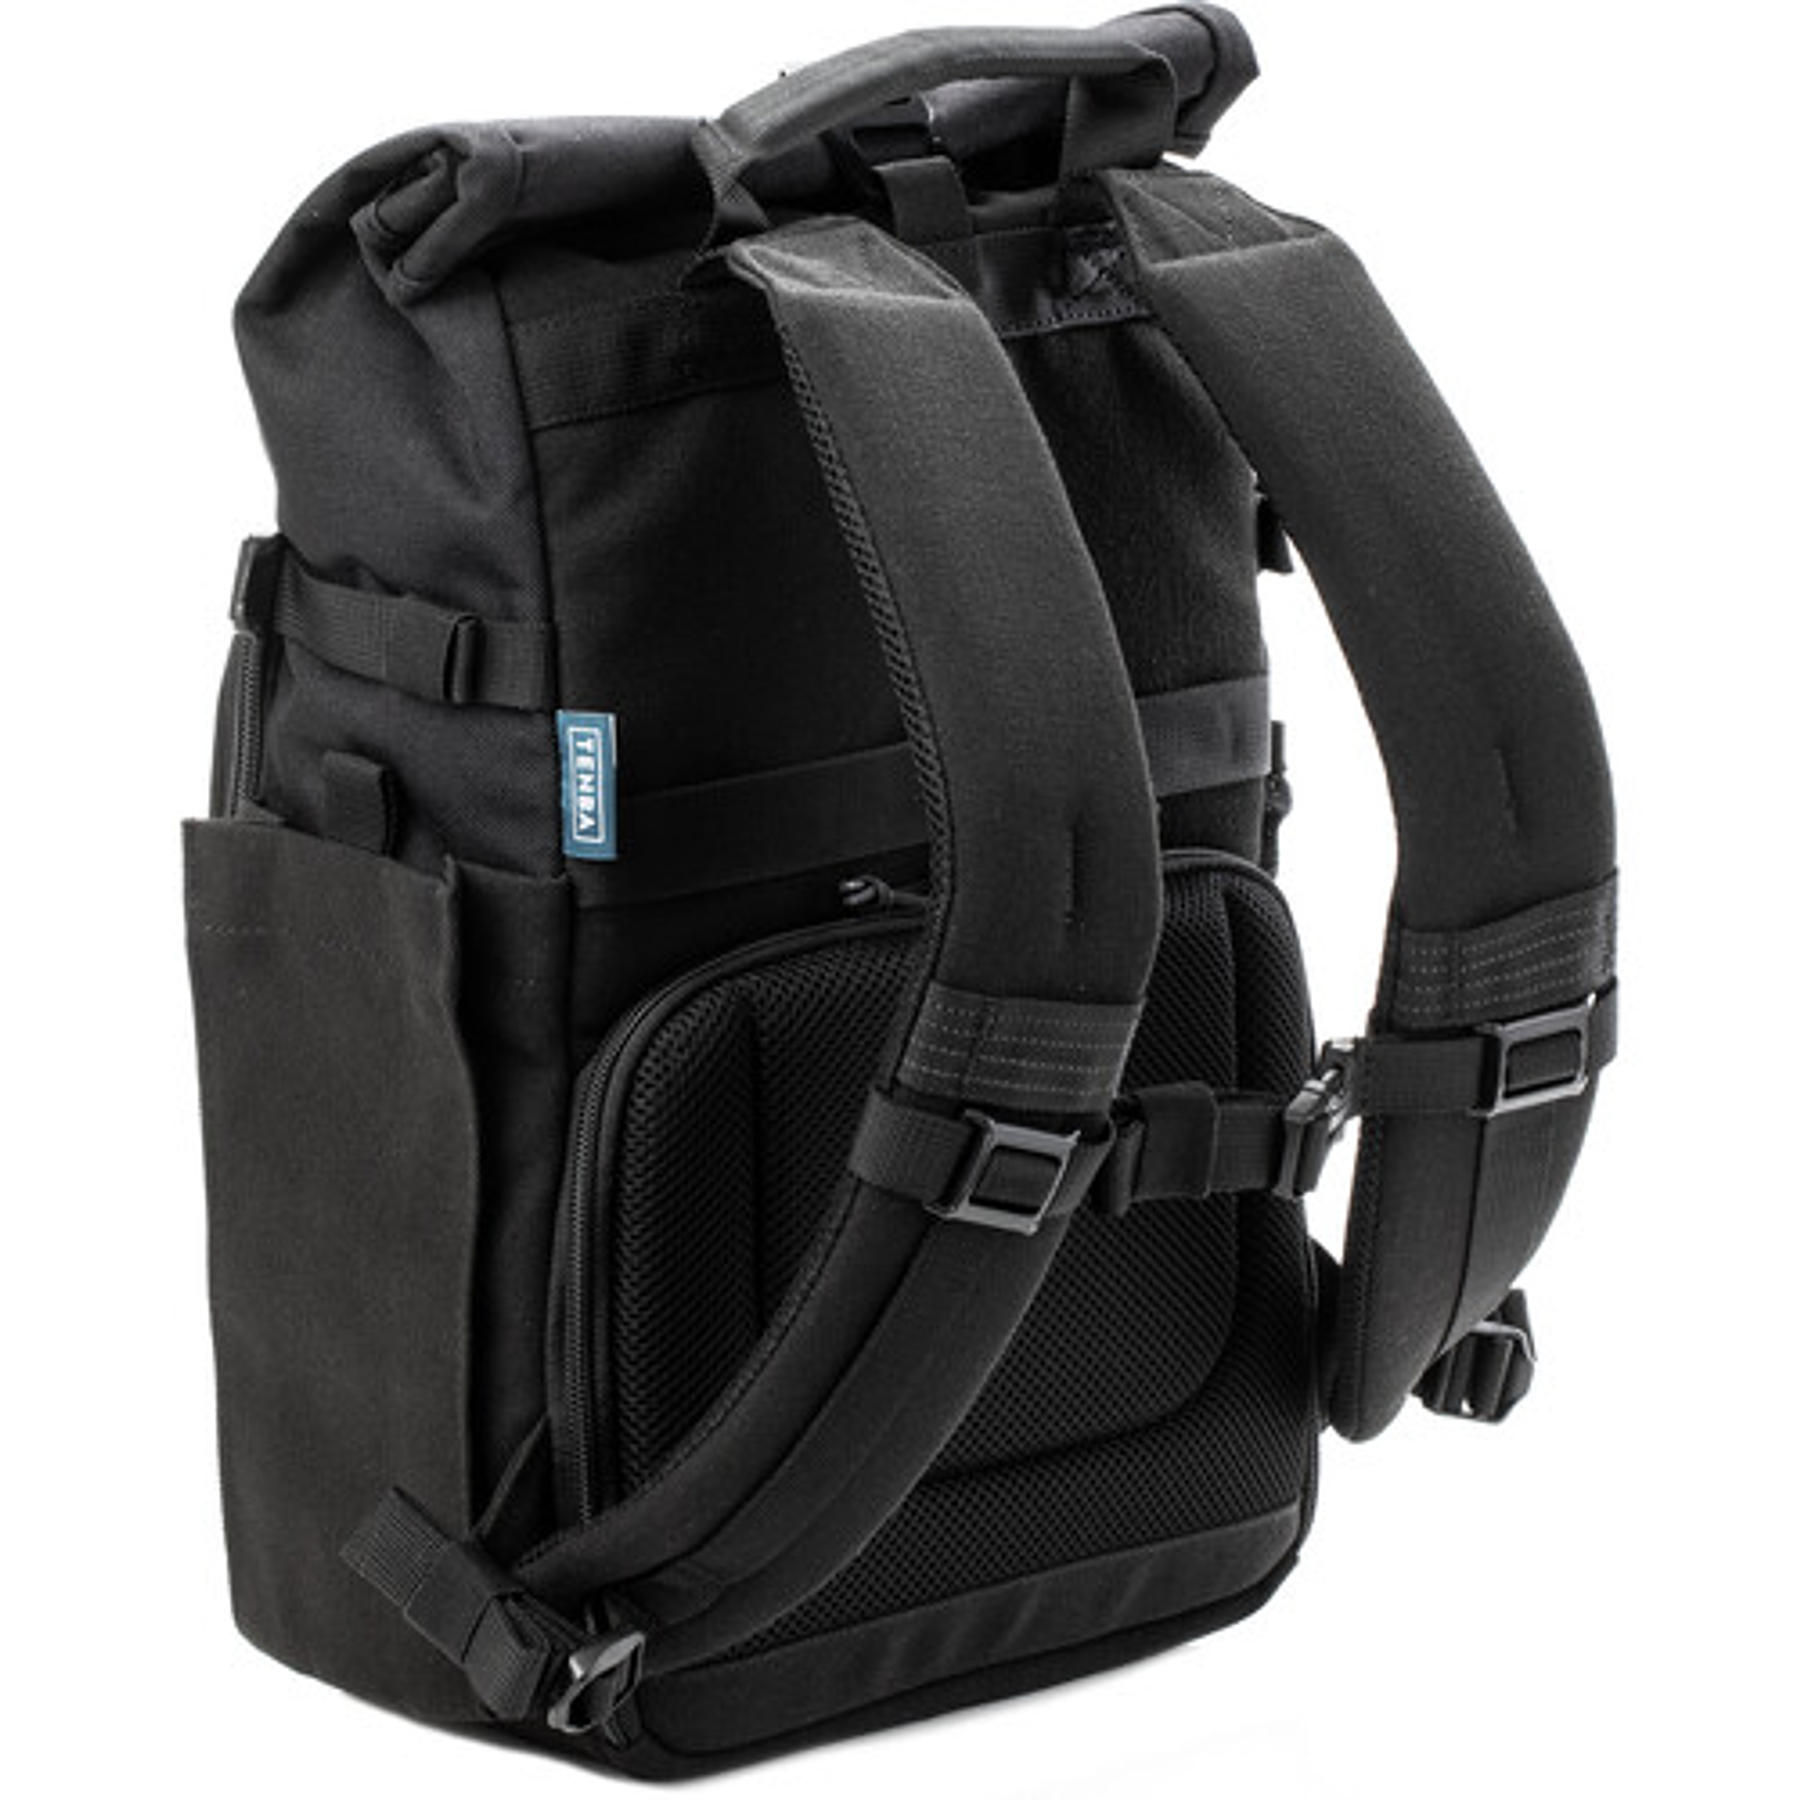 Tenba Fulton v2 10L Photo Backpack (Black)